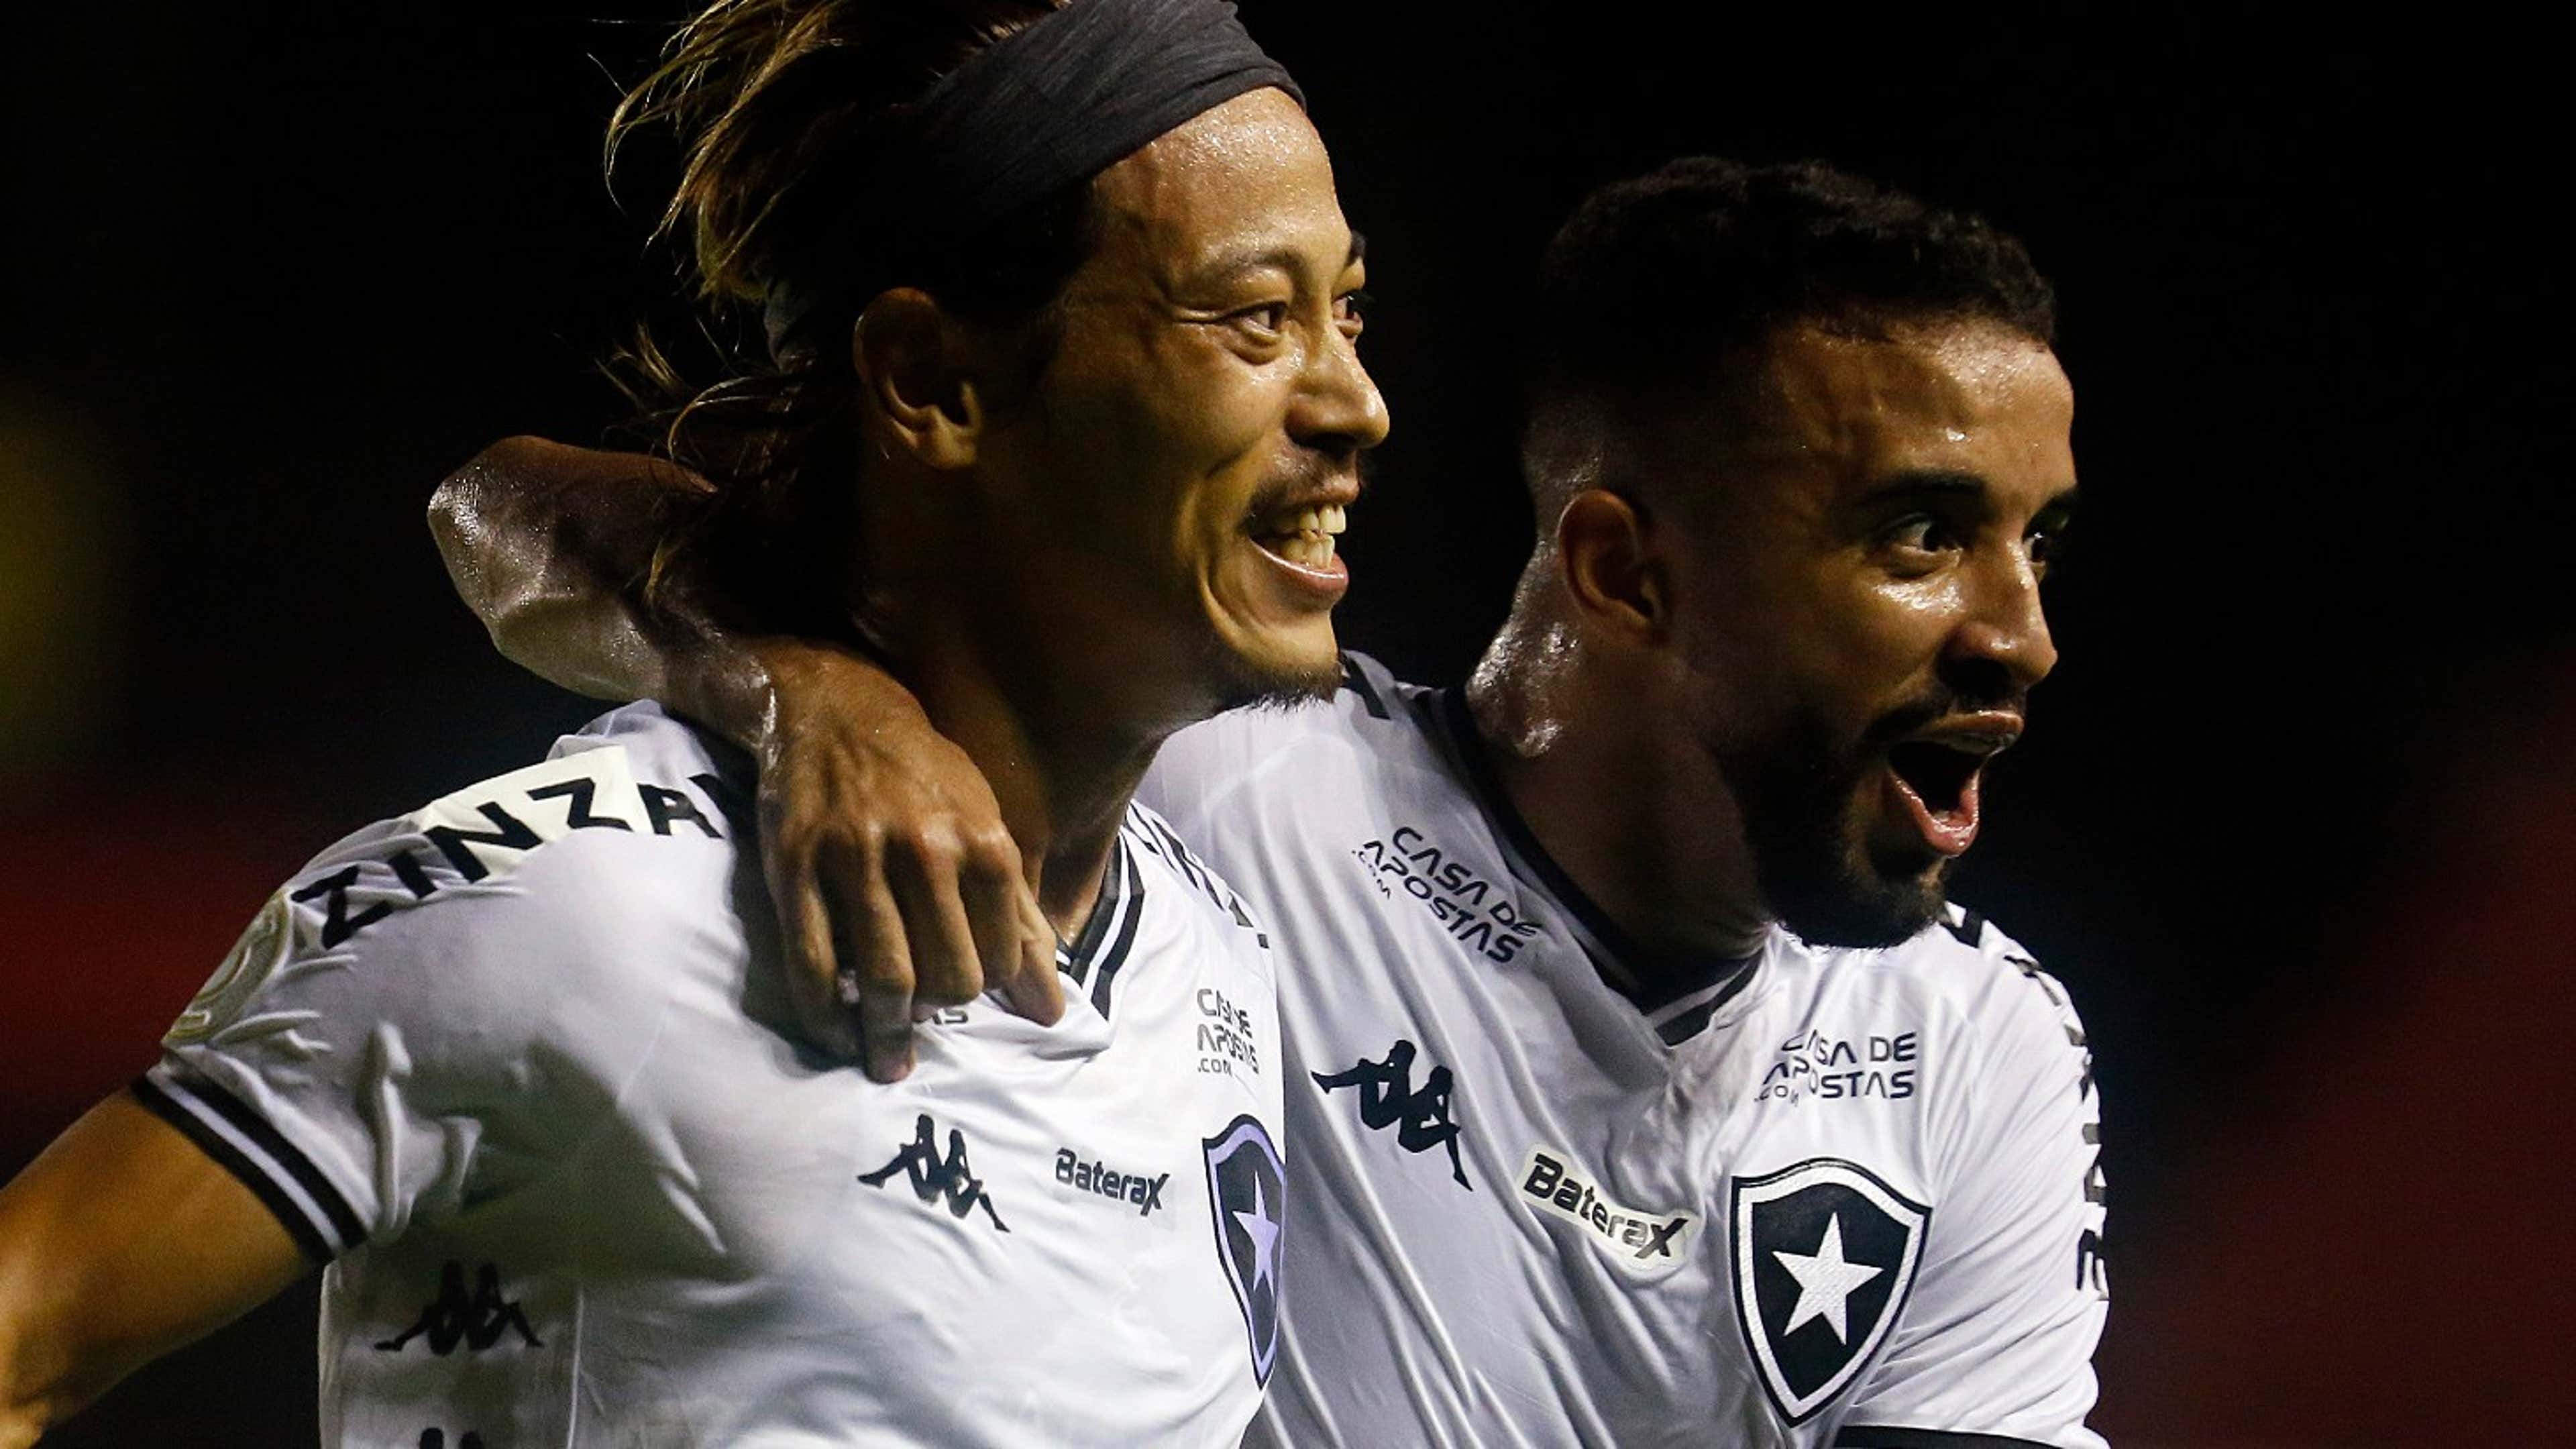 Botafogo x Goiás: onde assistir ao vivo, horário e escalações do